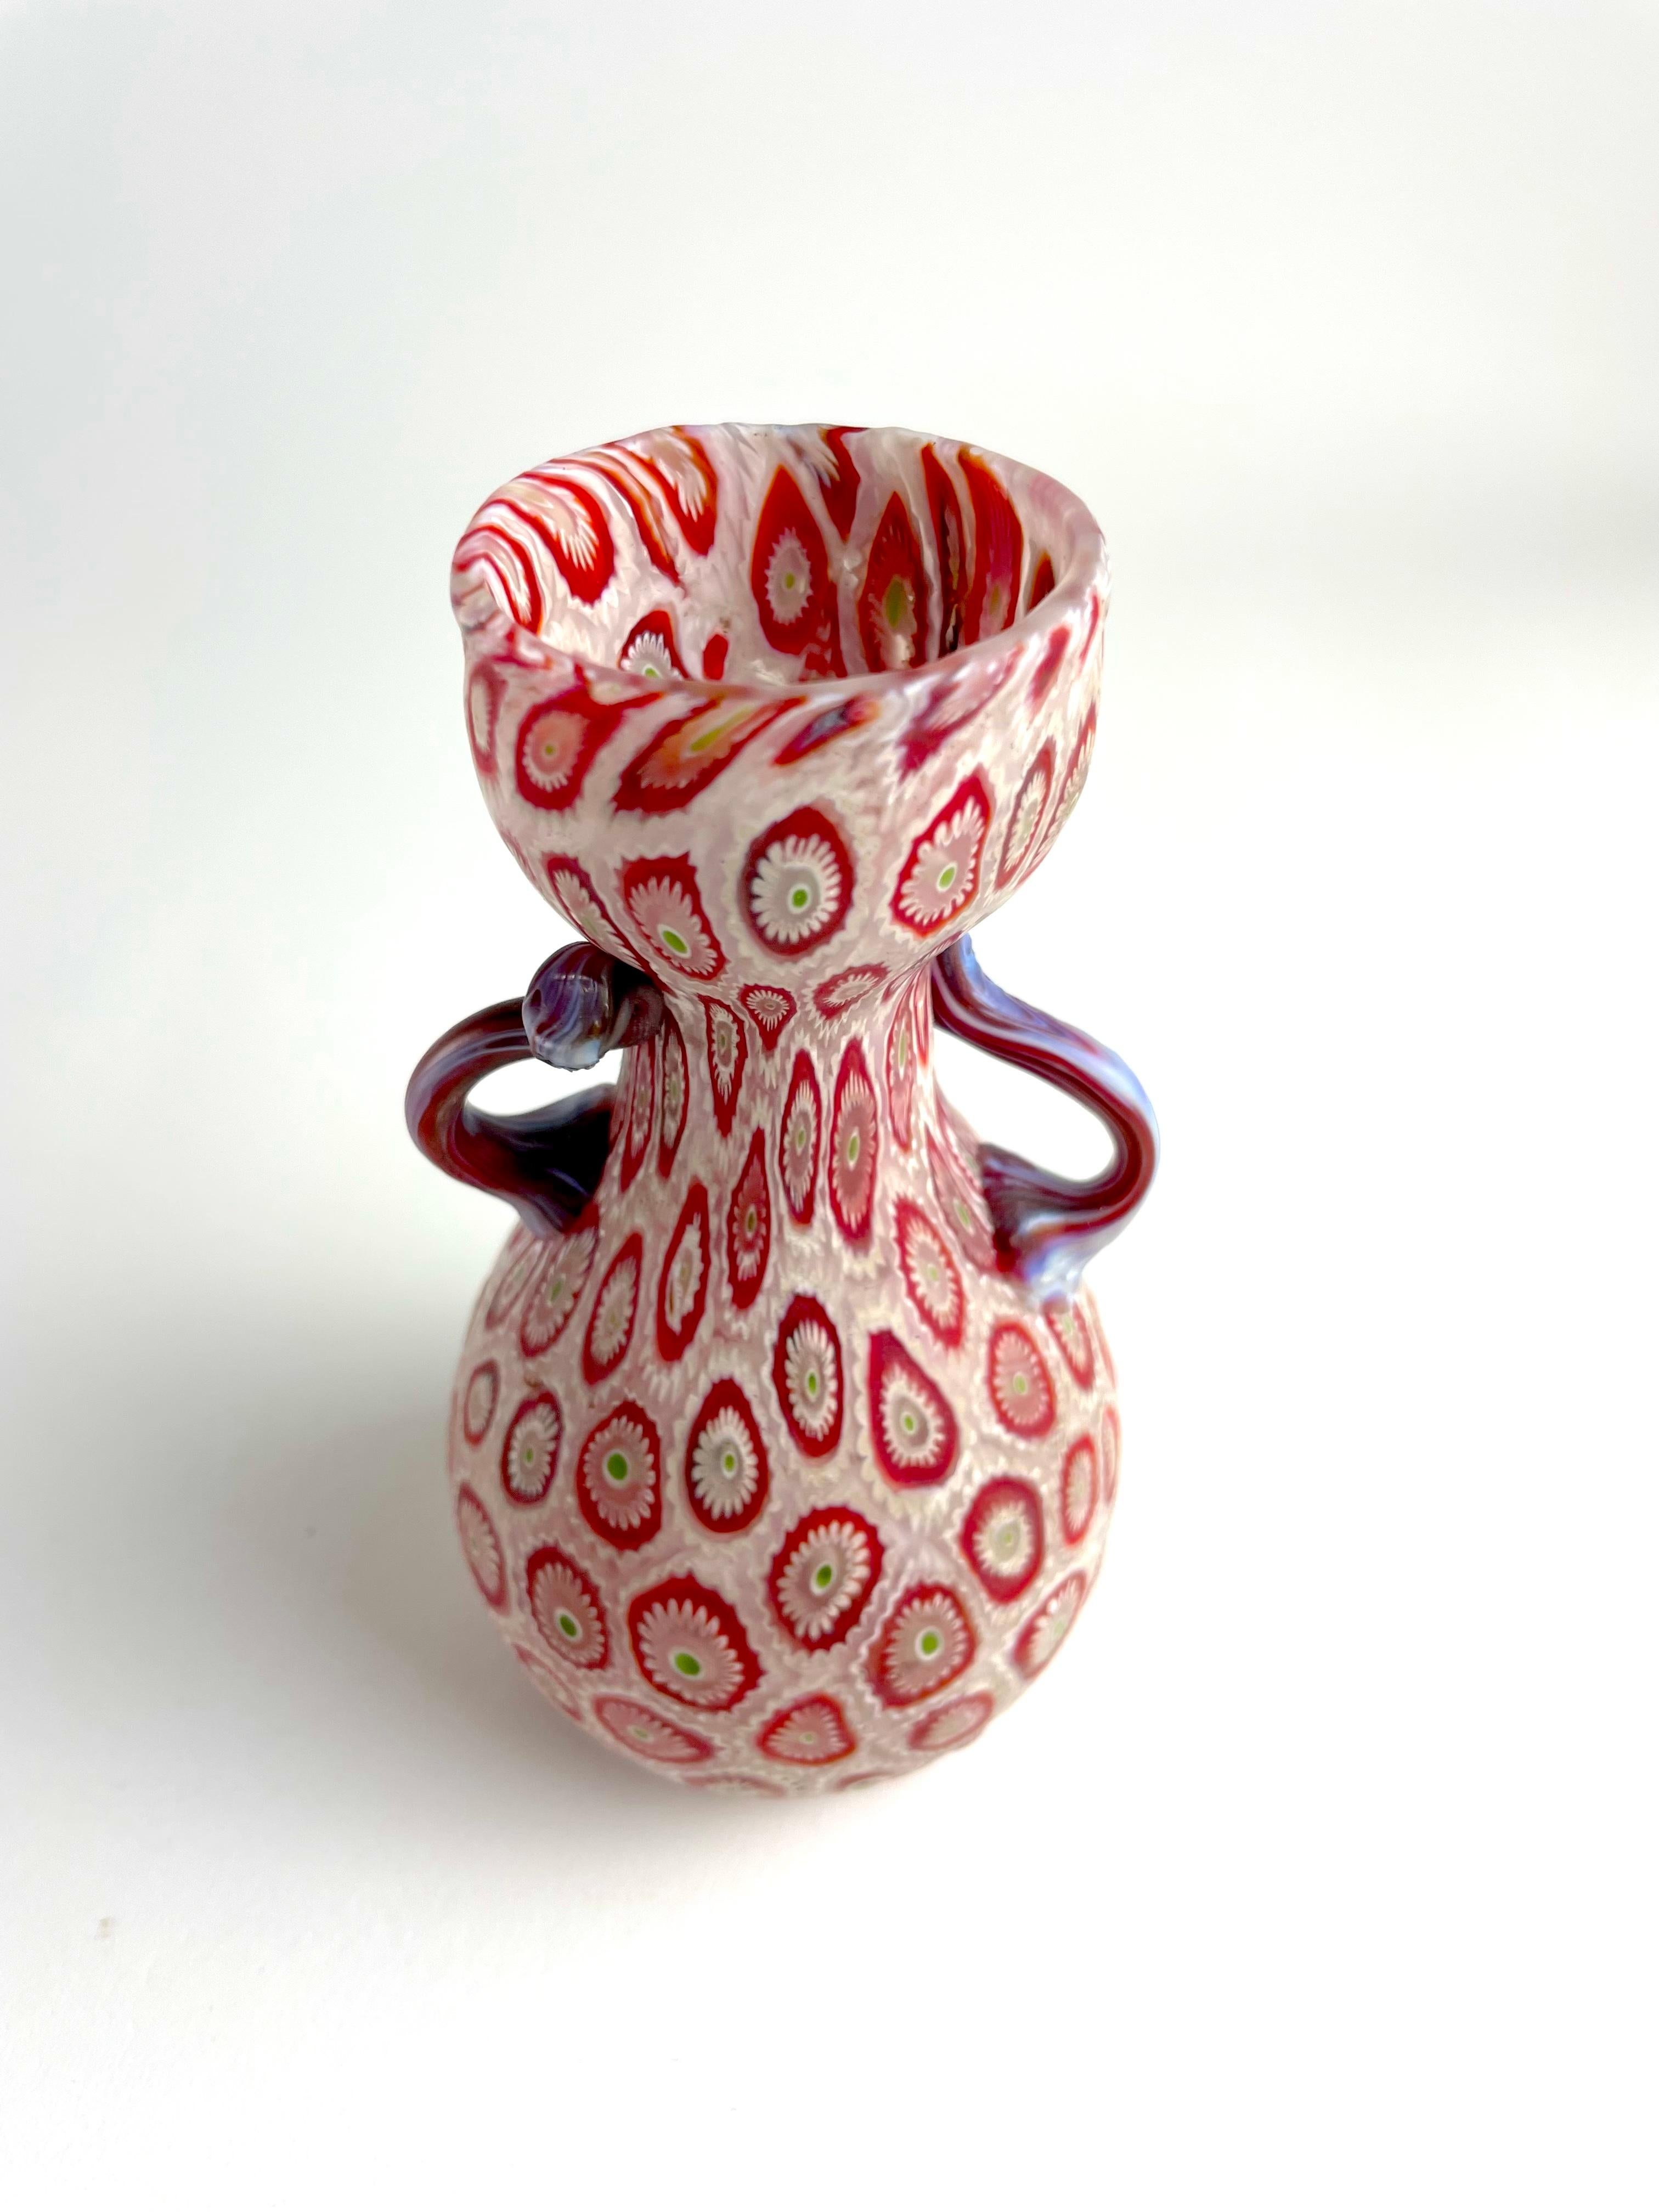 Versetzen Sie sich mit der Vase Millefiori Murrina von Fratelli Toso in die Vergangenheit. Dieses klassische Design stammt aus den 50er Jahren und zeigt die echte Handwerkskunst, die Fratelli Toso berühmt gemacht hat. Jedes Stück wird in